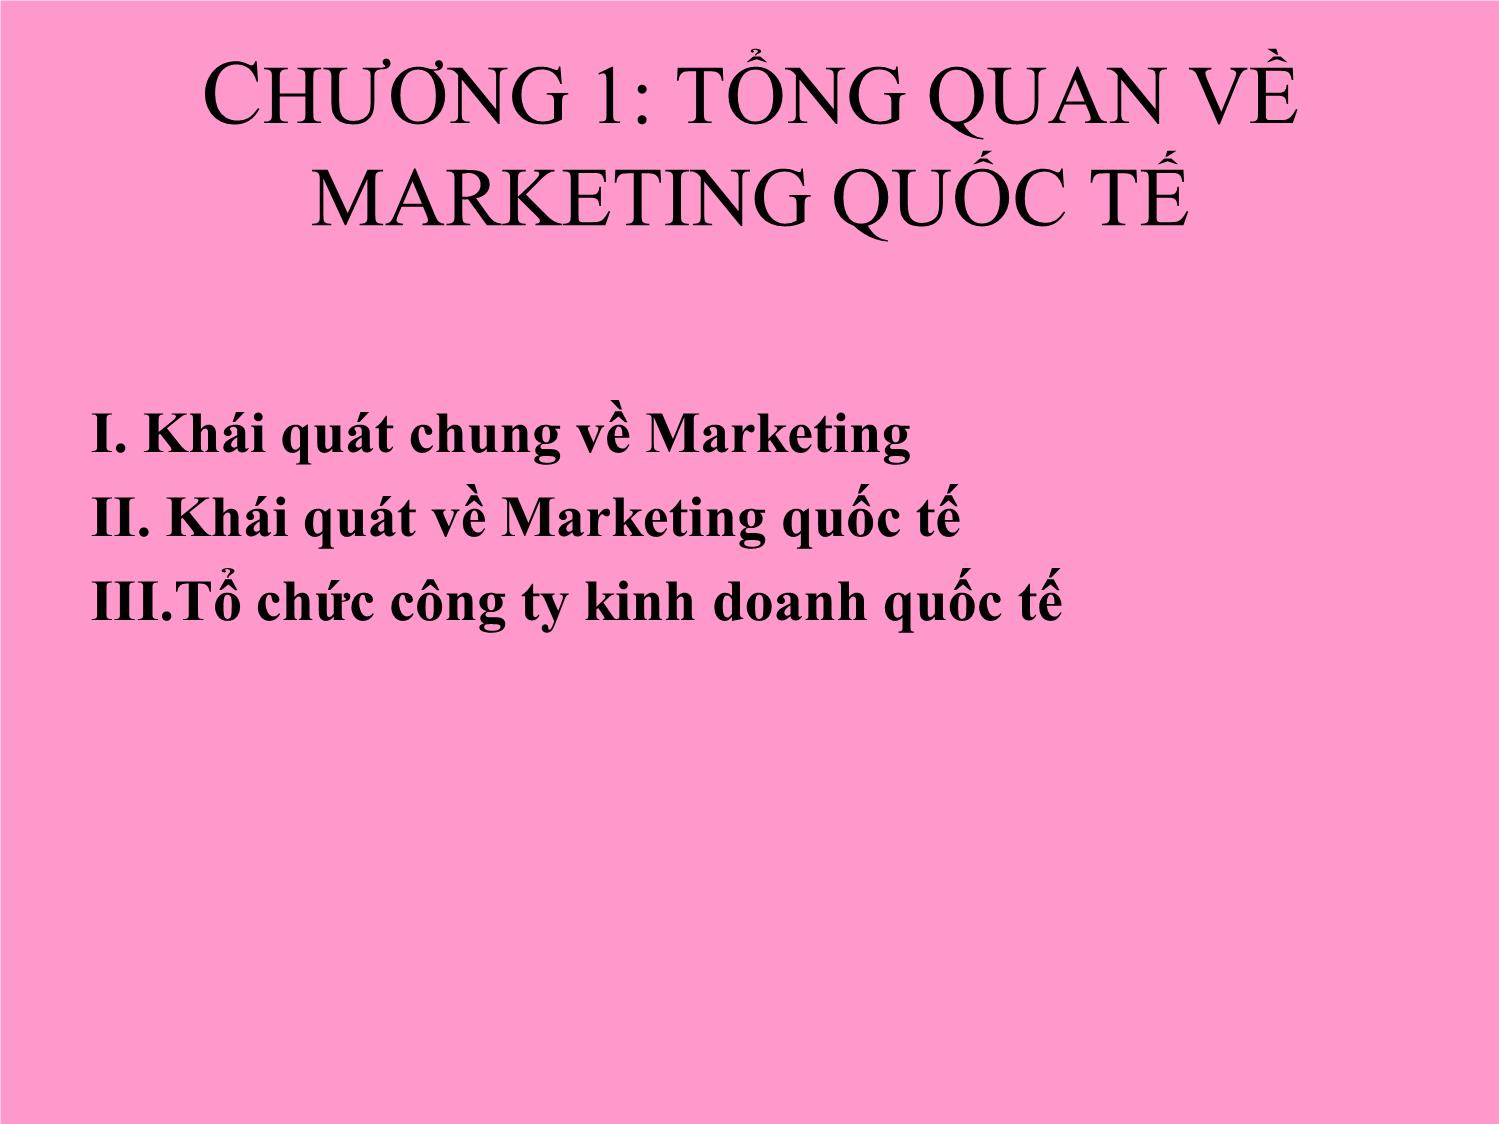 Bài giảng Marketing quốc tế - Chương 1: Tổng quan về Marketing quốc tế - Trần Hải Ly trang 4